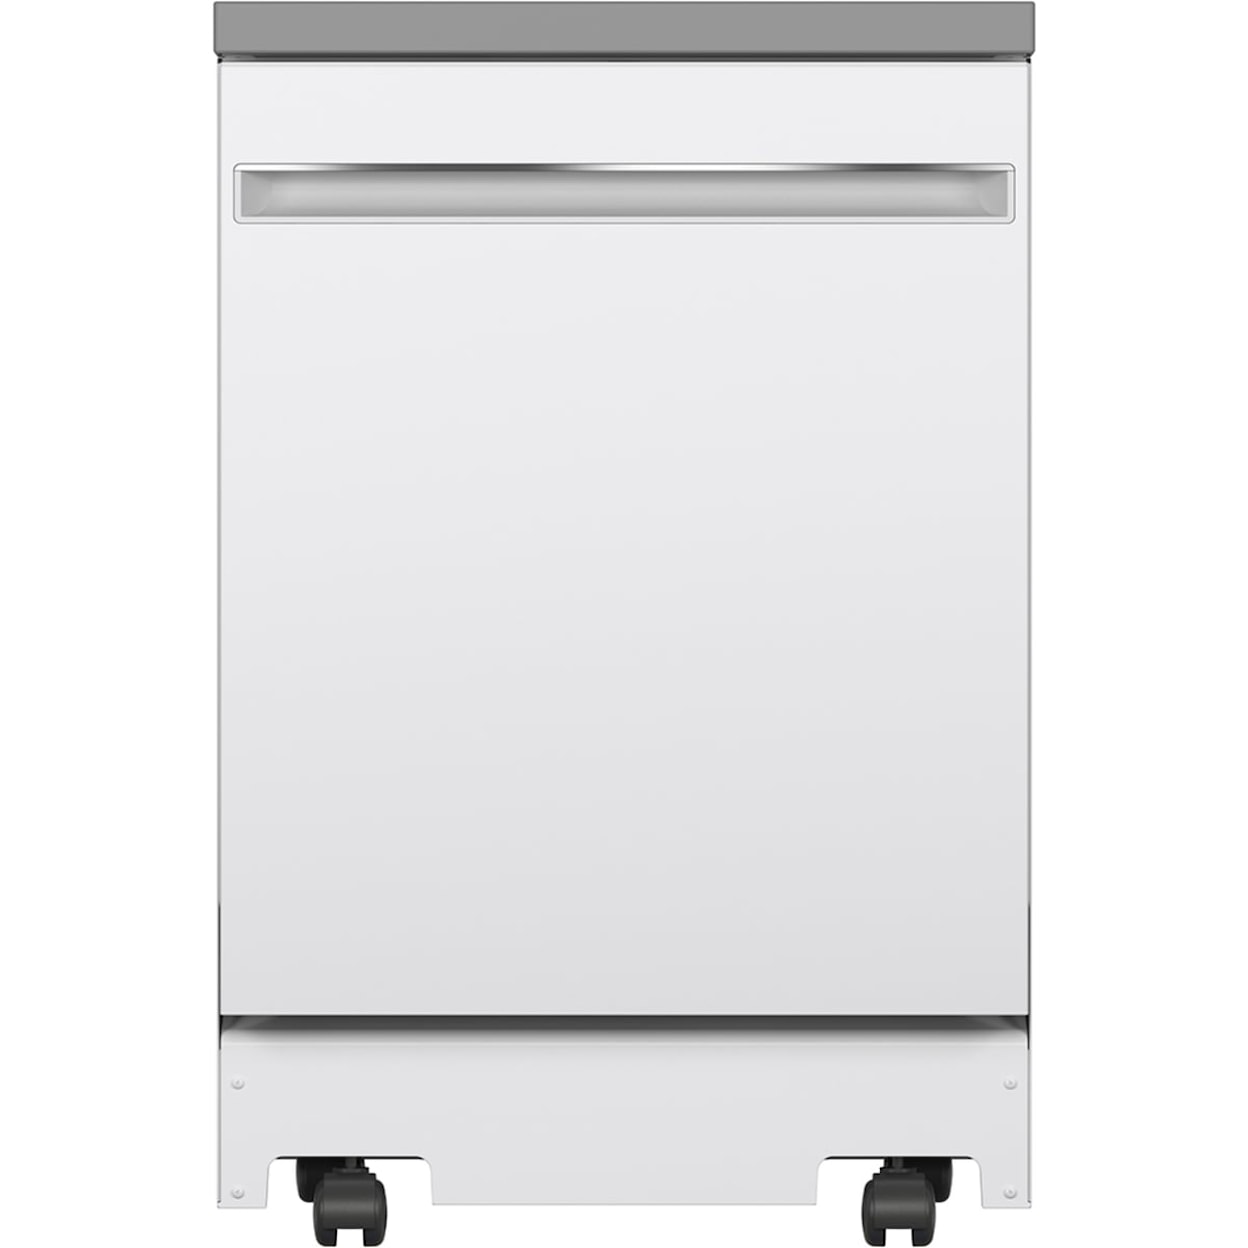 GE Appliances Dishwashers Portable Dishwasher